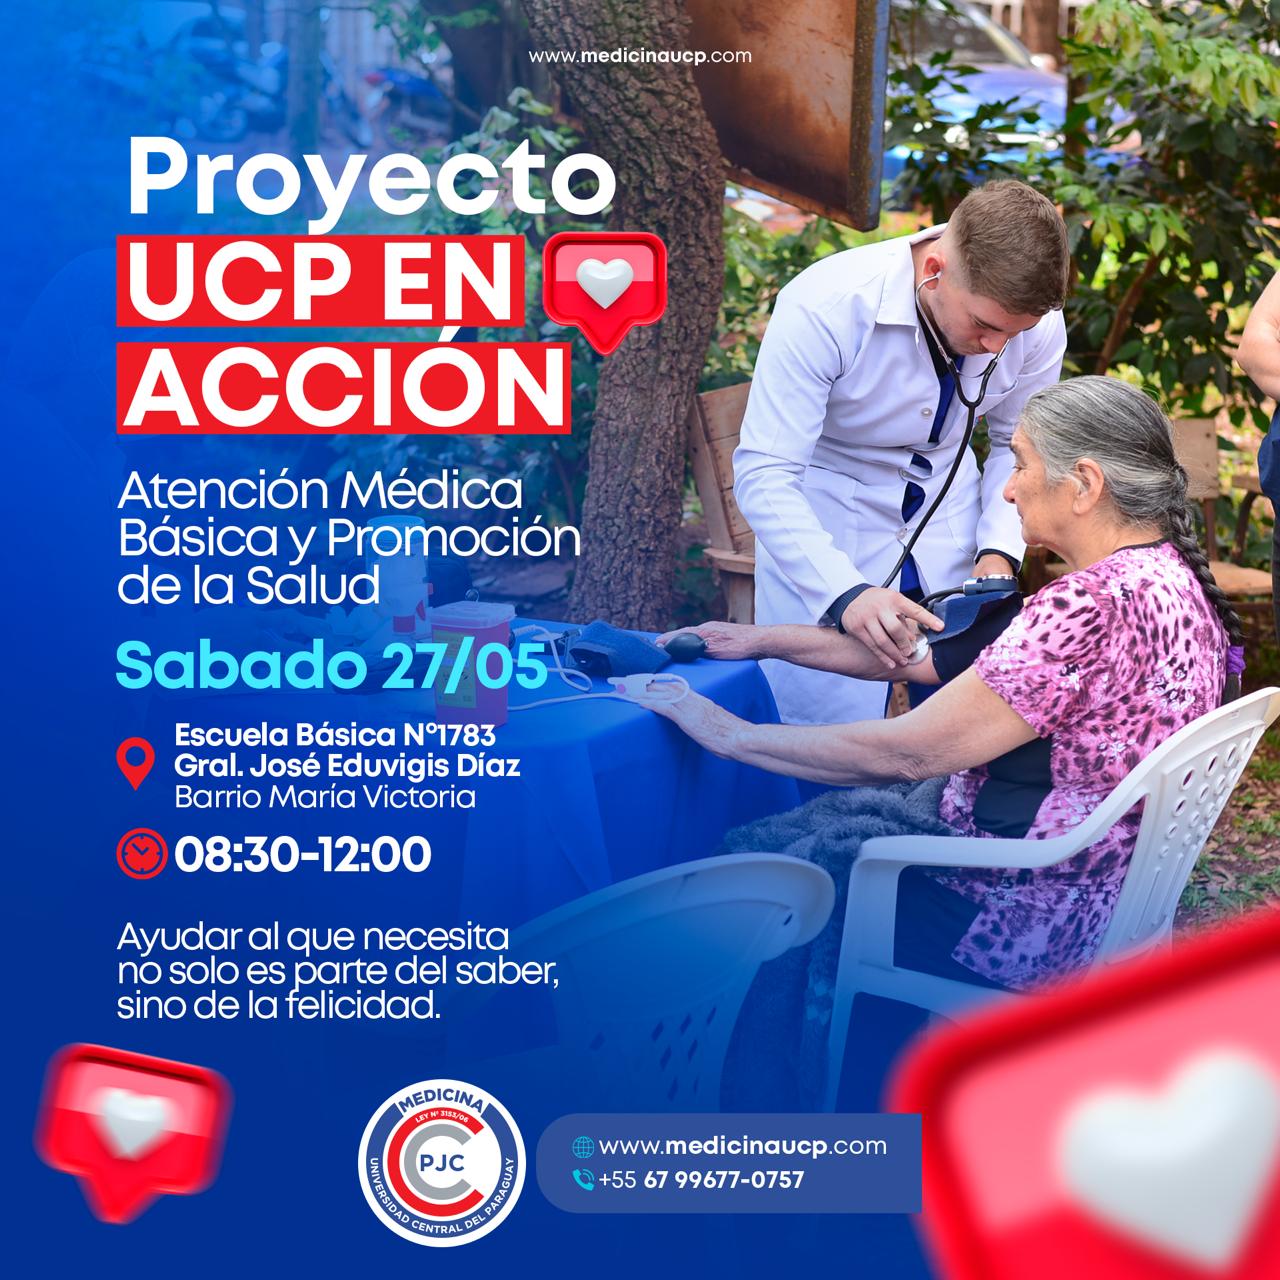 Atención médica gratuita de la UCP llega esta vez al barrio María Victoria